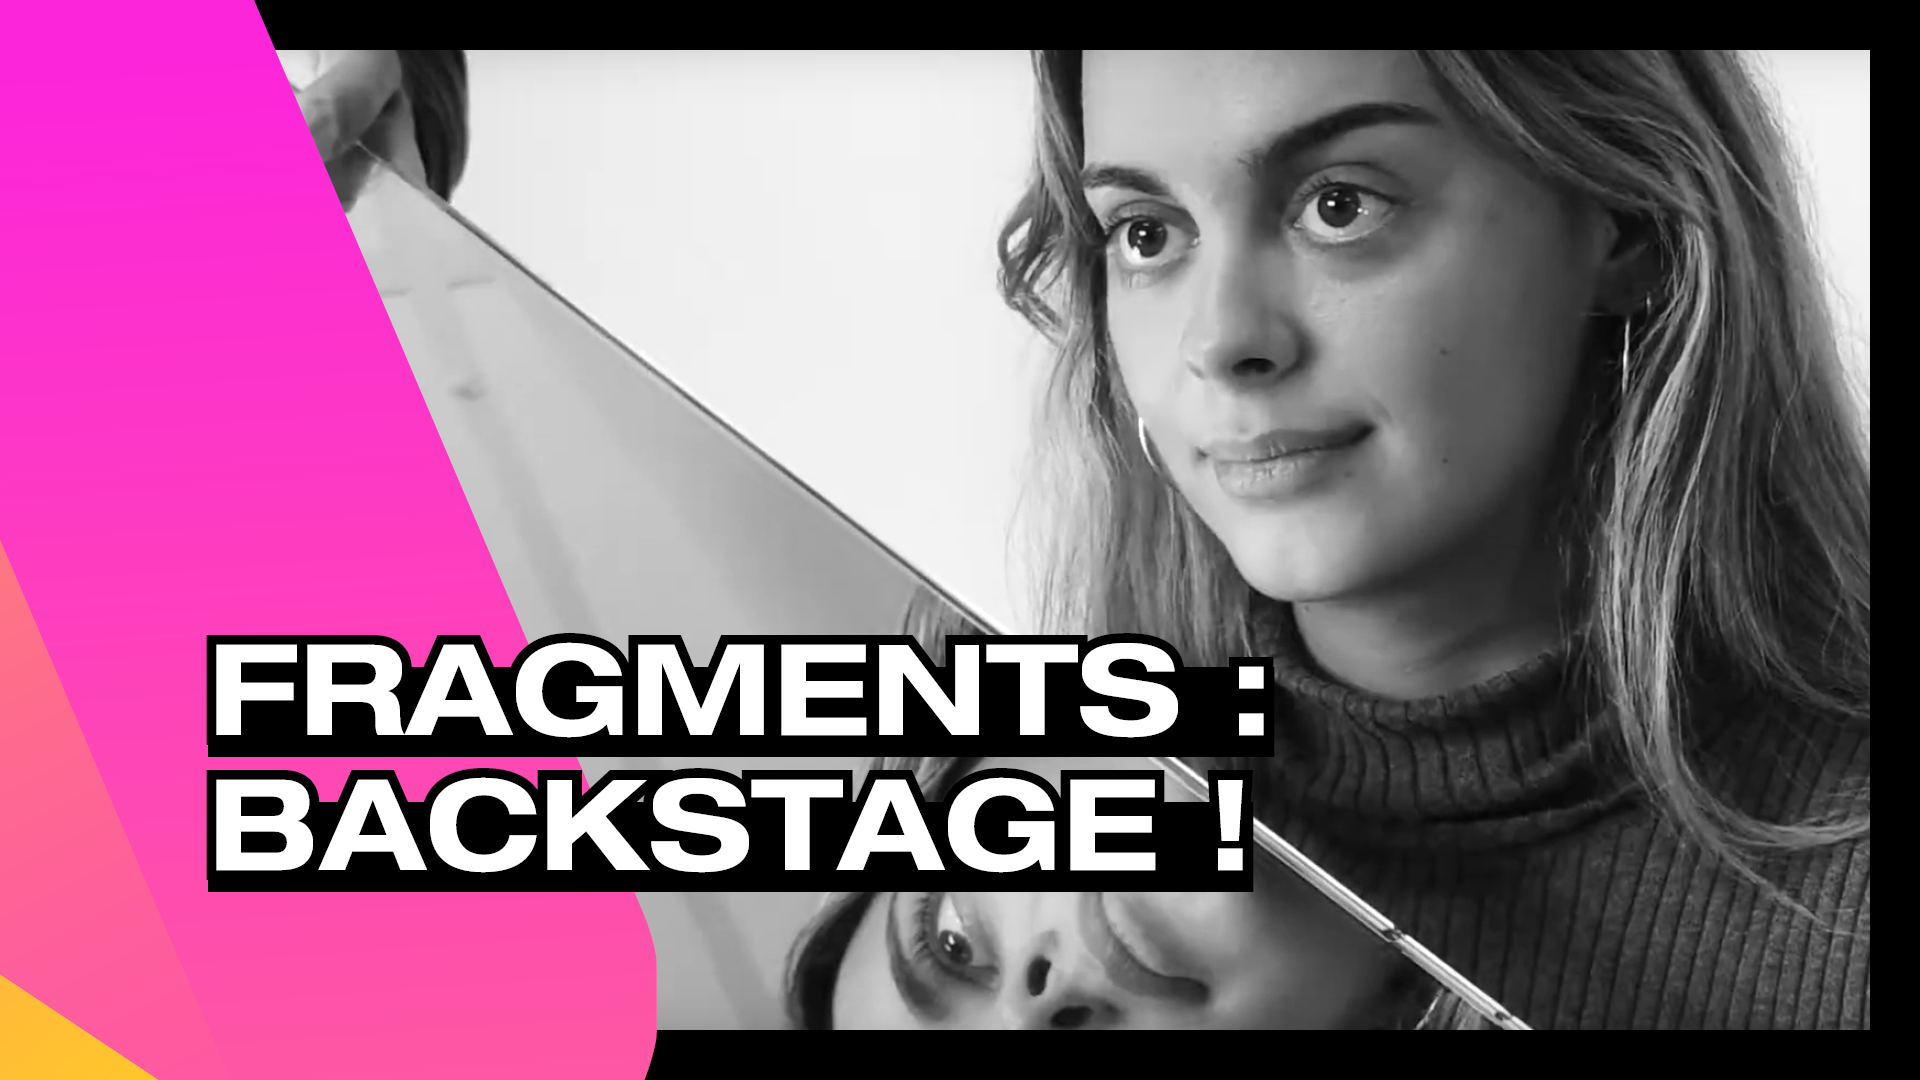 Fragments - Backstage !